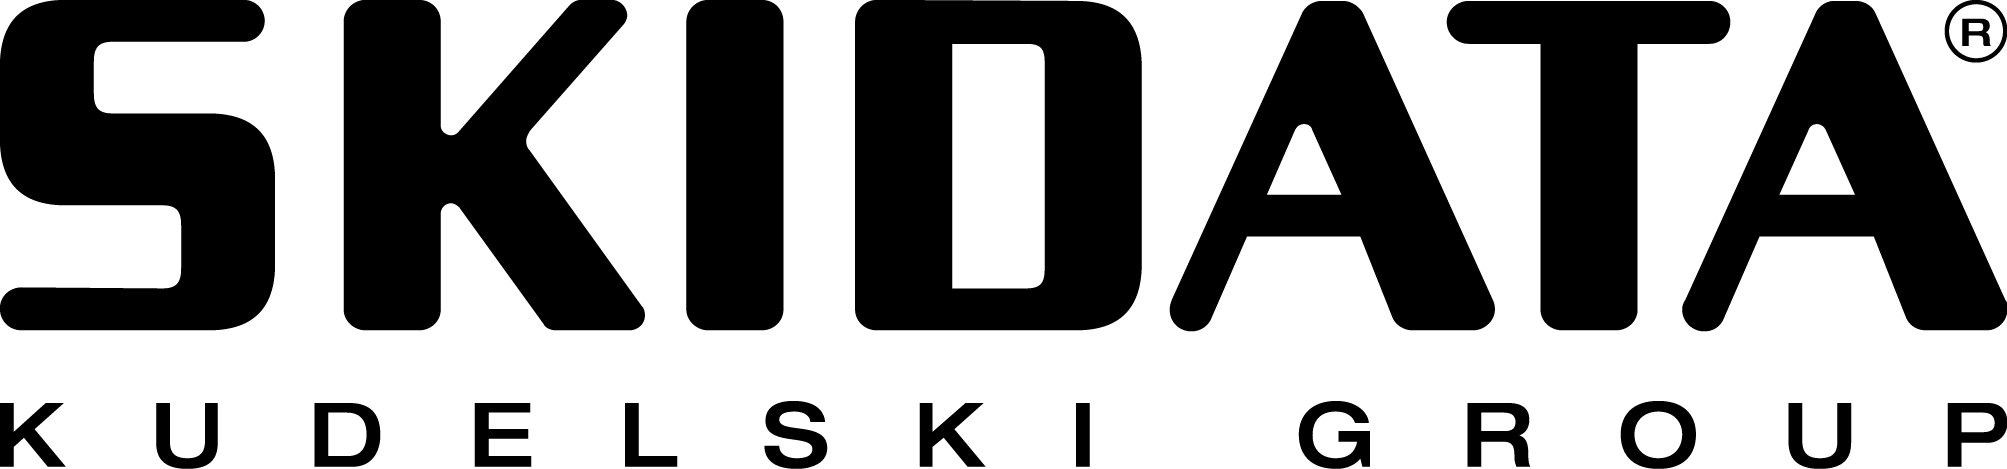 SKIDATA, Inc. logo